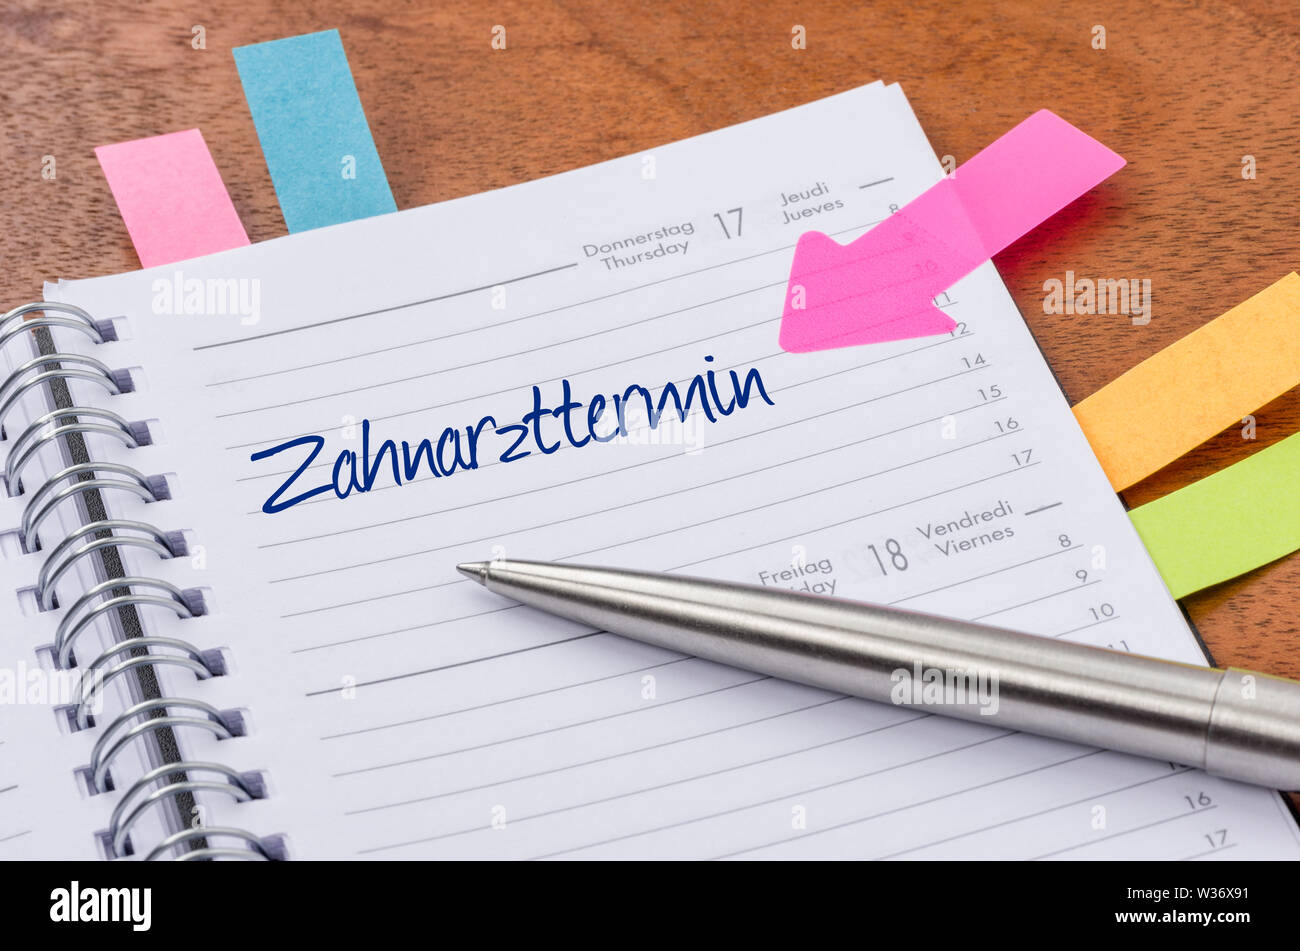 Planificateur quotidien avec l'entrée rendez-vous chez le dentiste - Zahnarzttermin (allemand) Banque D'Images